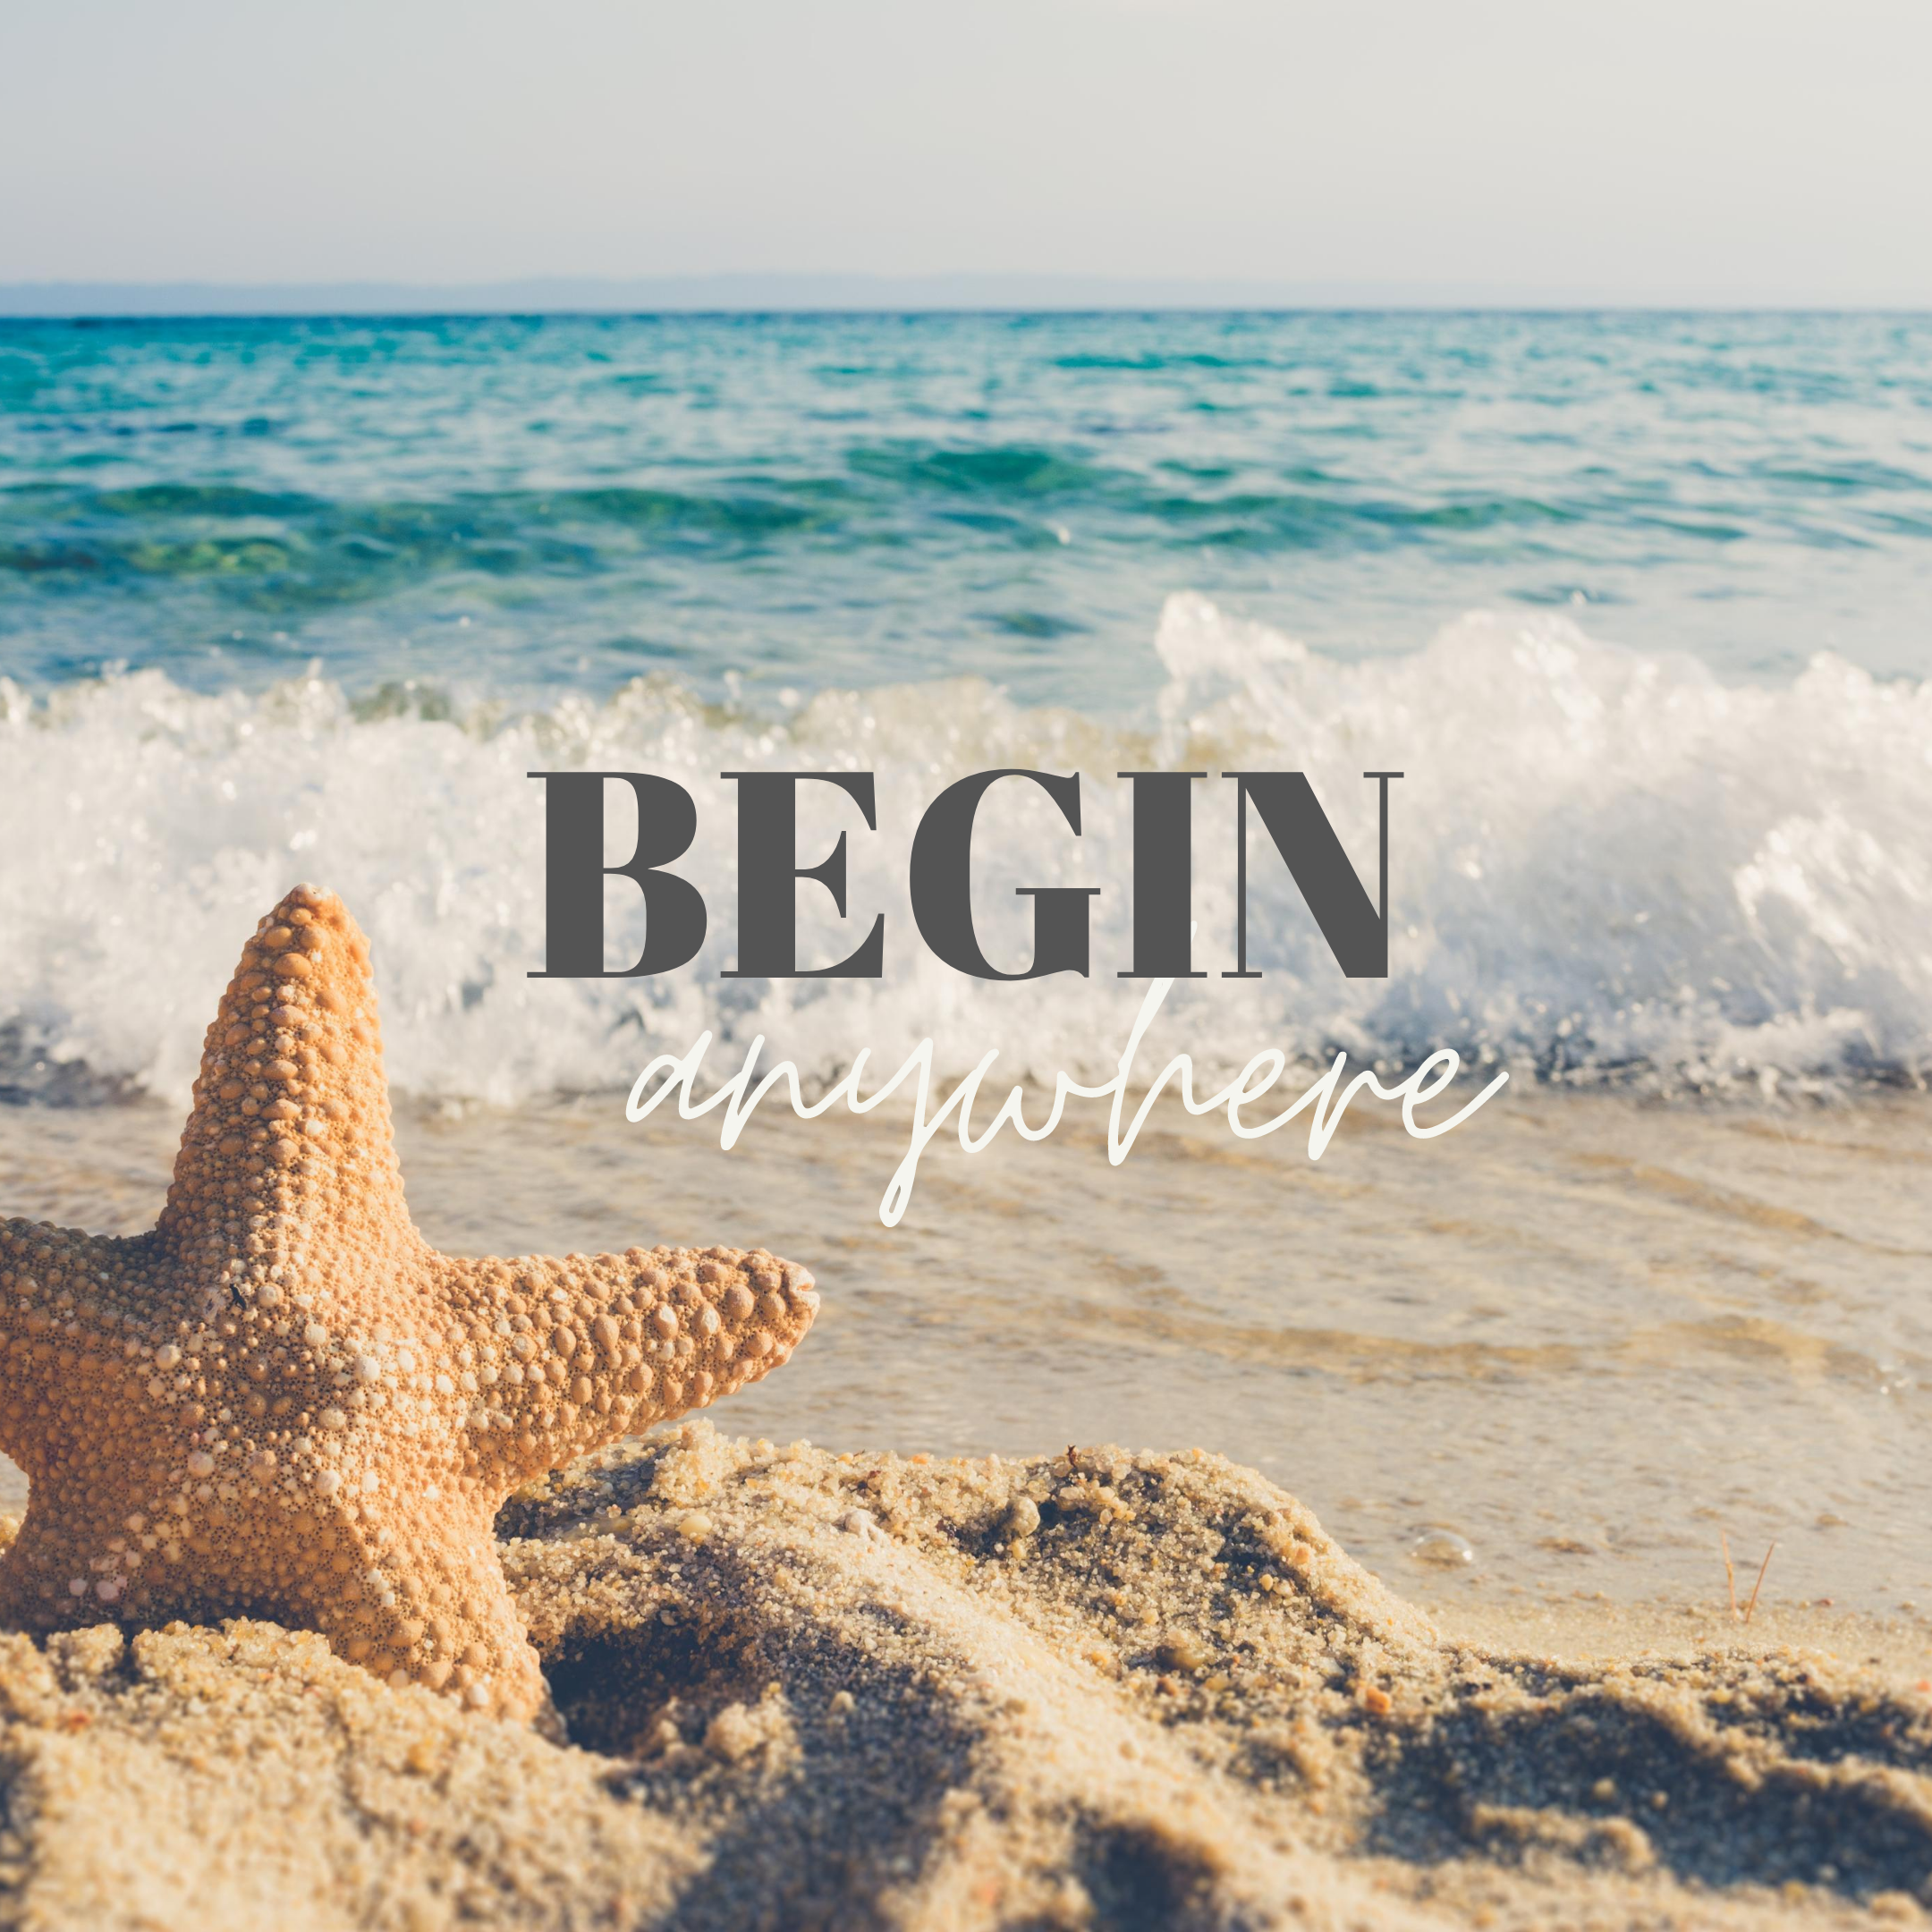 Begin anywhere.